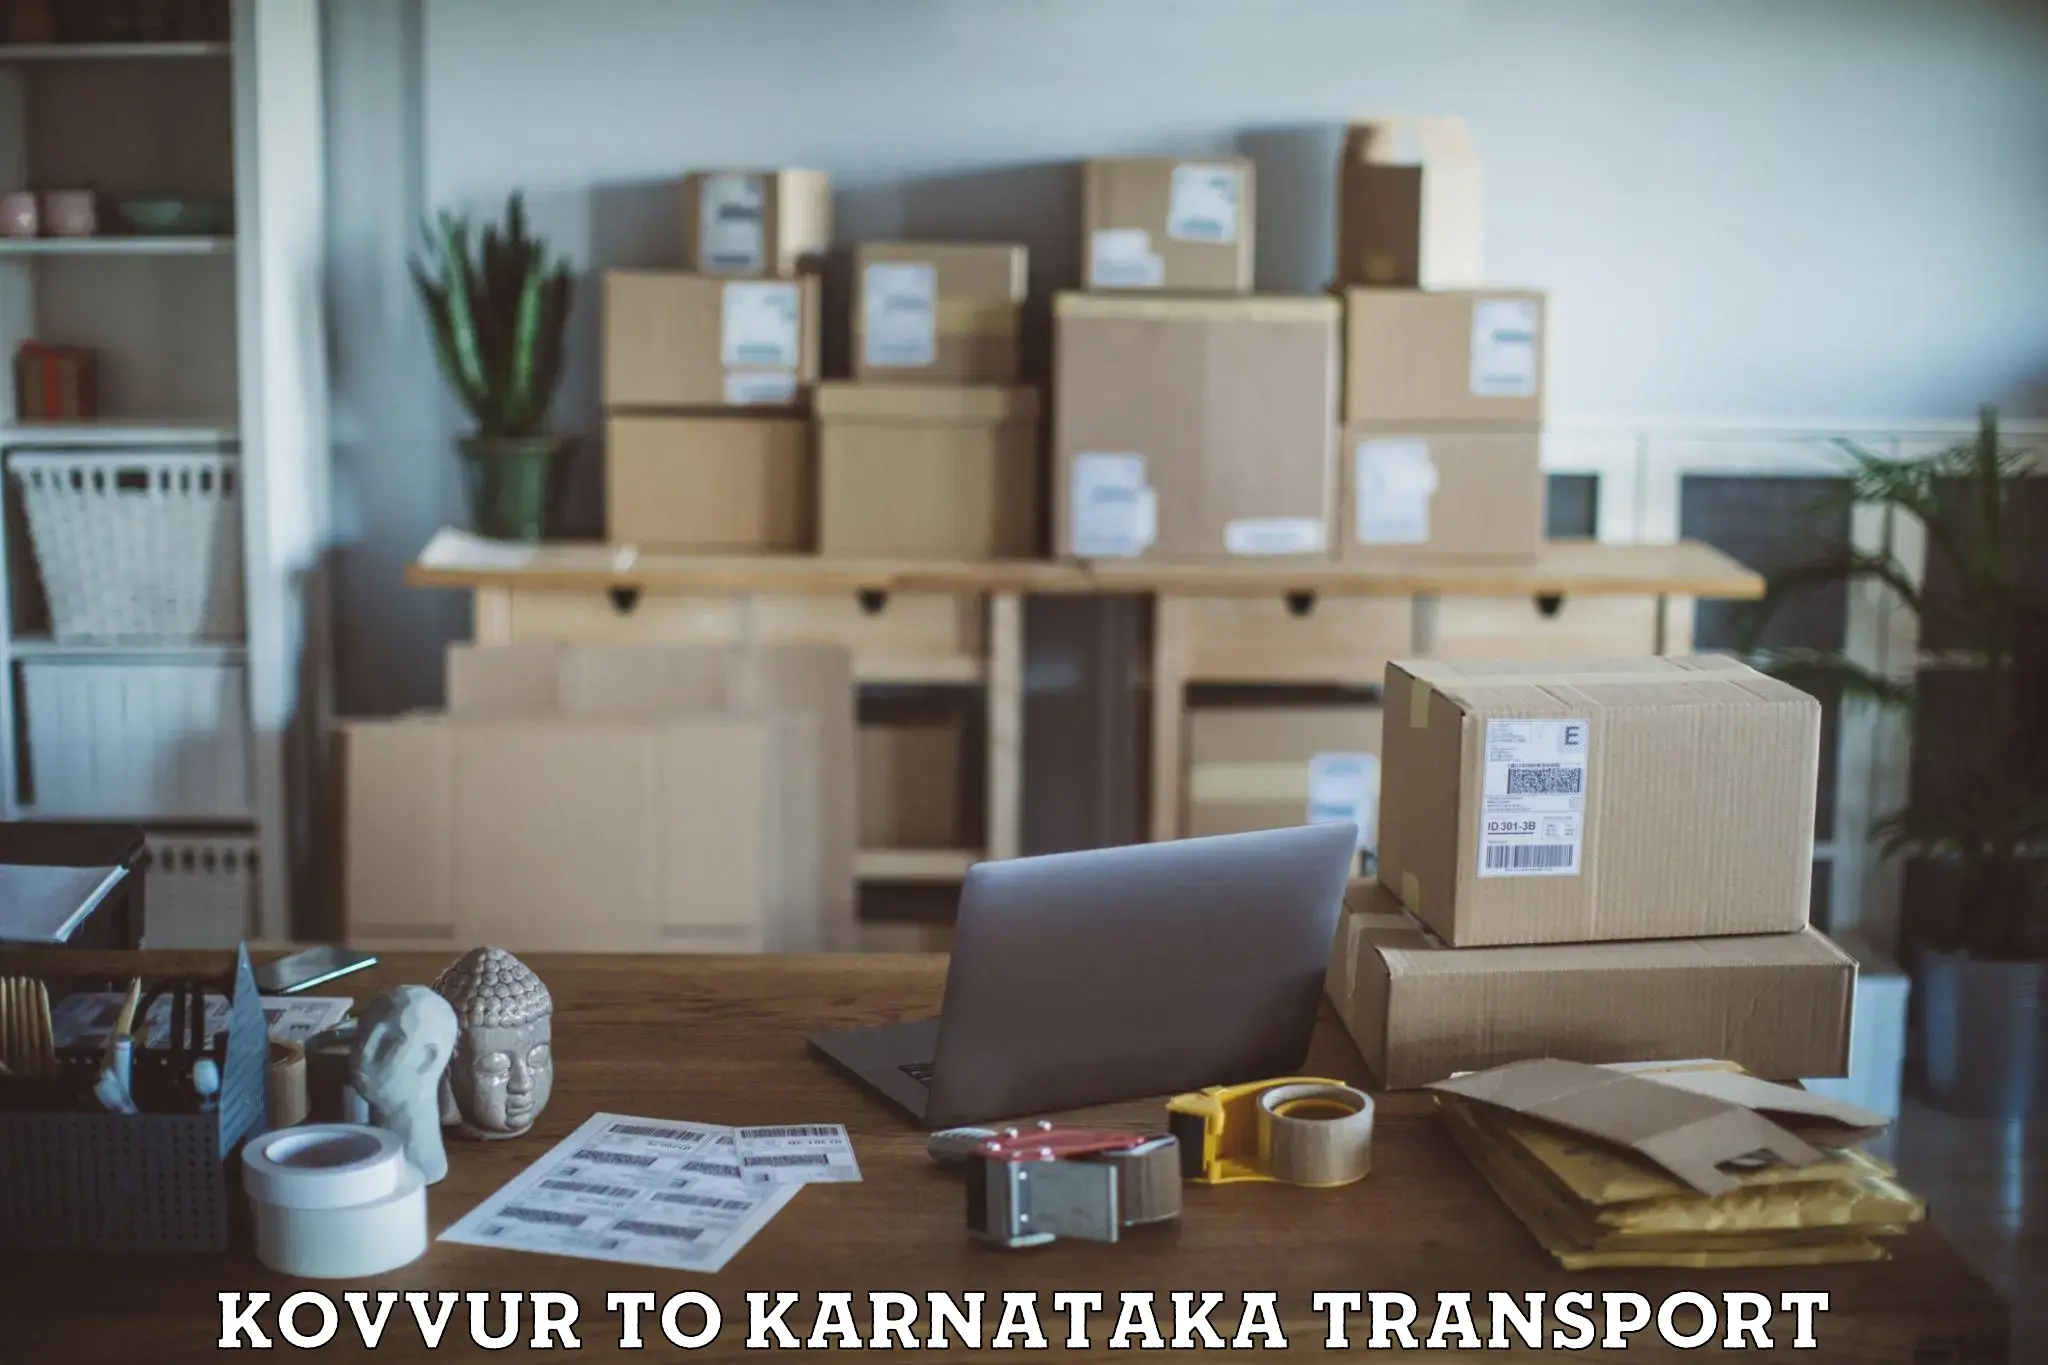 Parcel transport services Kovvur to Navalgund